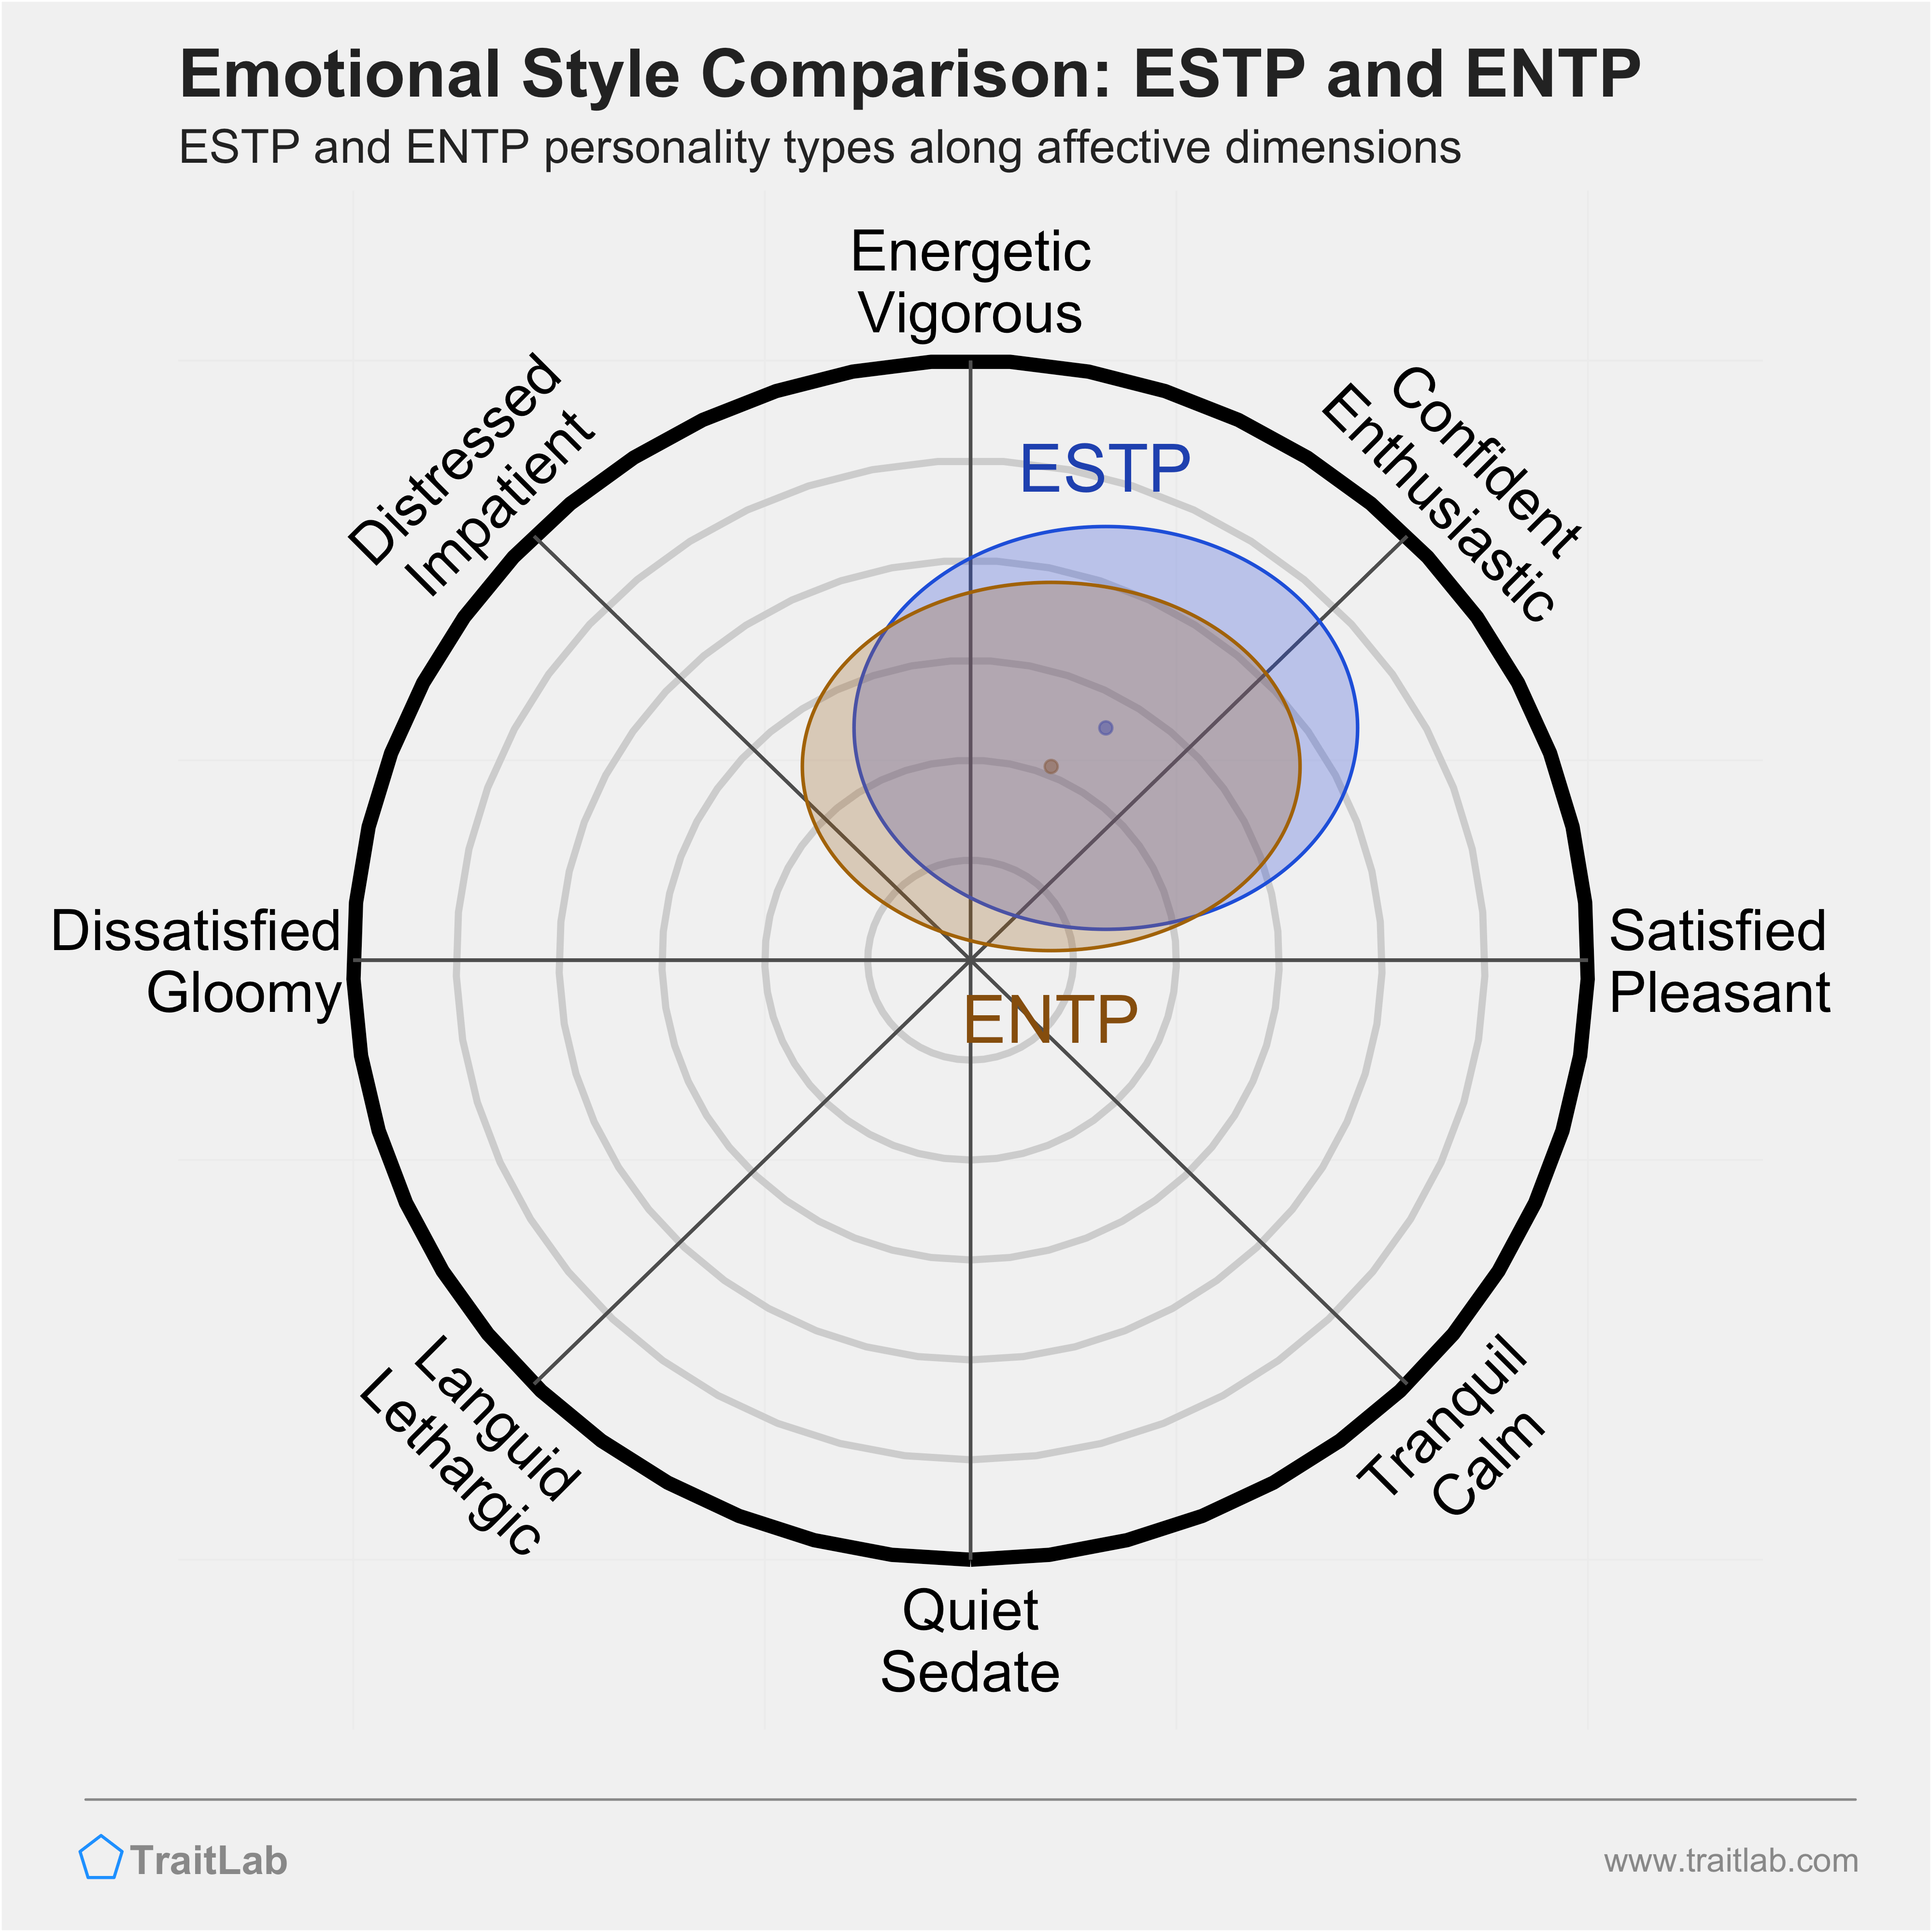 ESTP and ENTP comparison across emotional (affective) dimensions